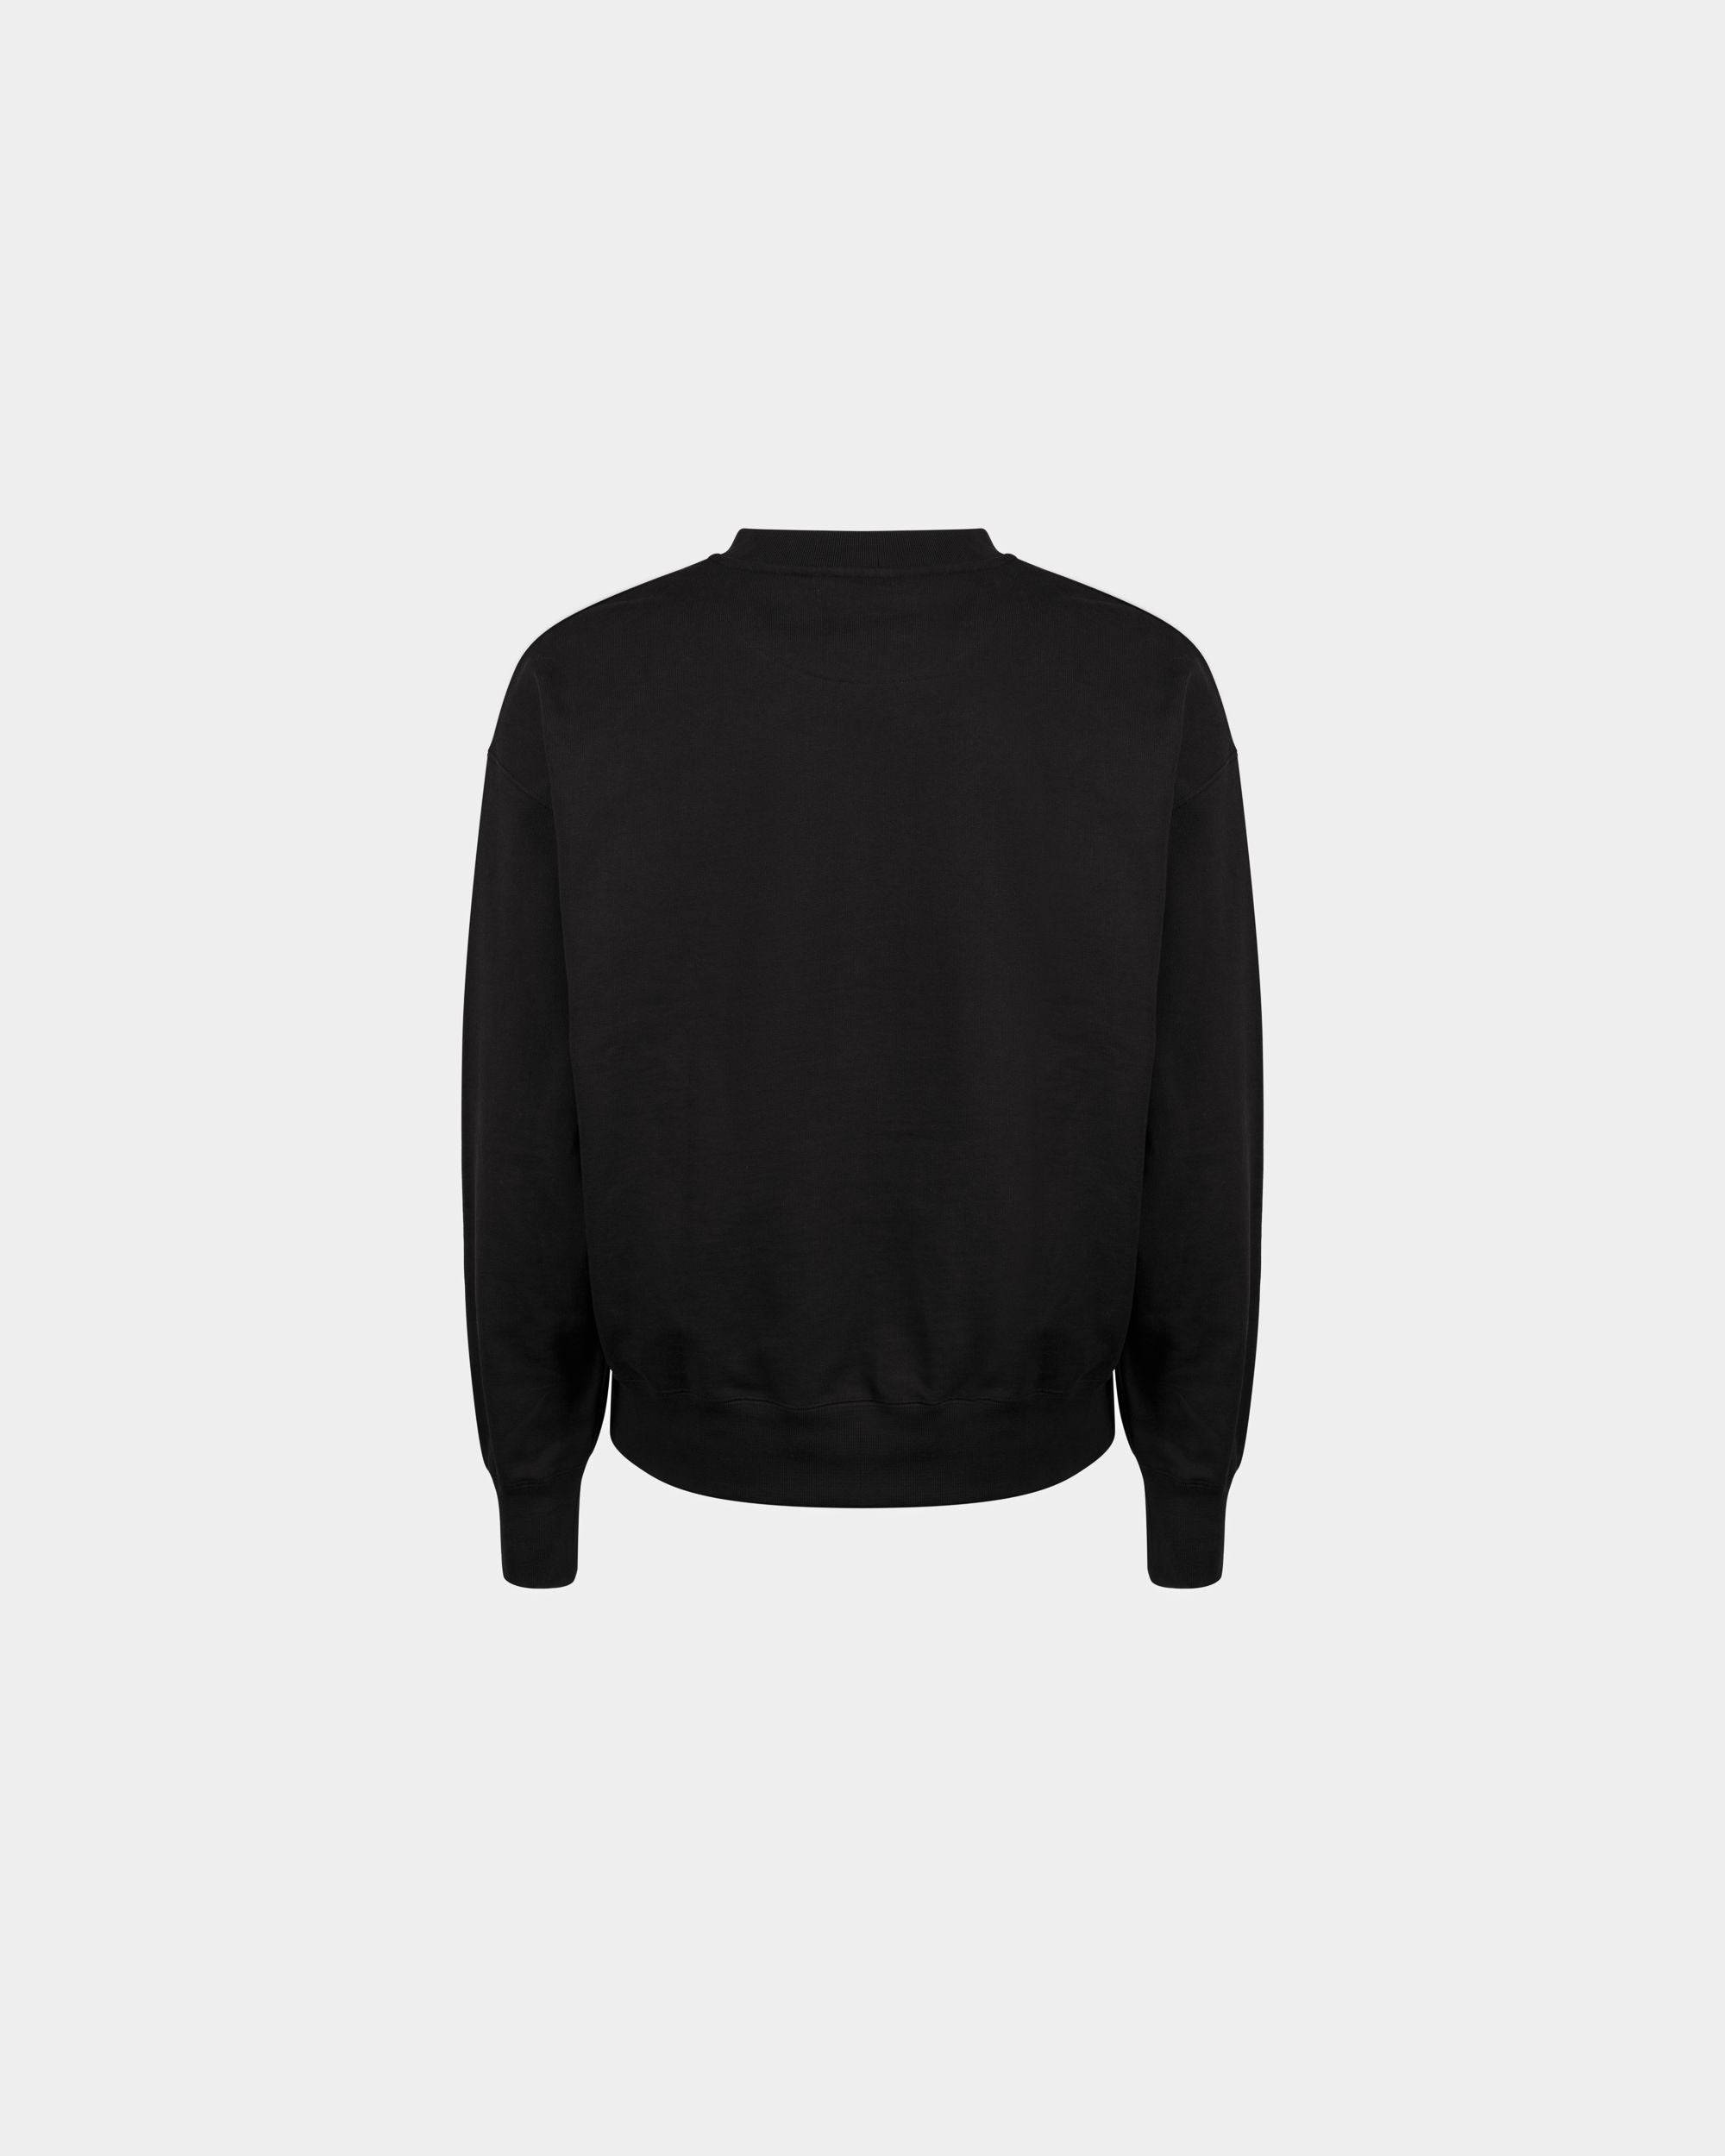 Men's Sweatshirt in Black Cotton | Bally | Still Life Back